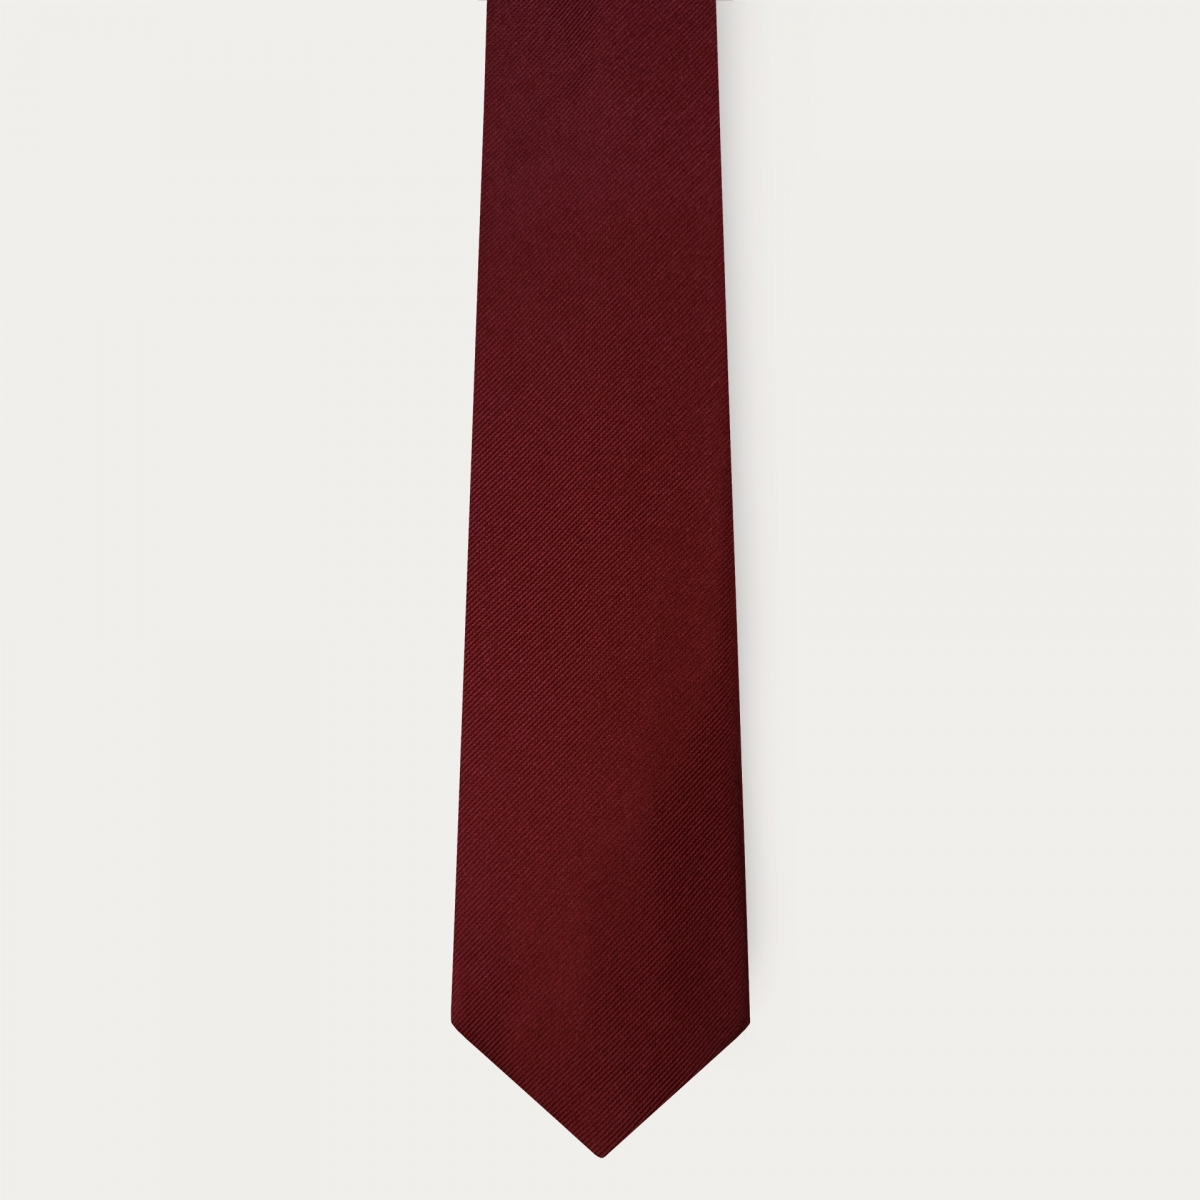 Cravatta bordeaux in seta larga 8 cm